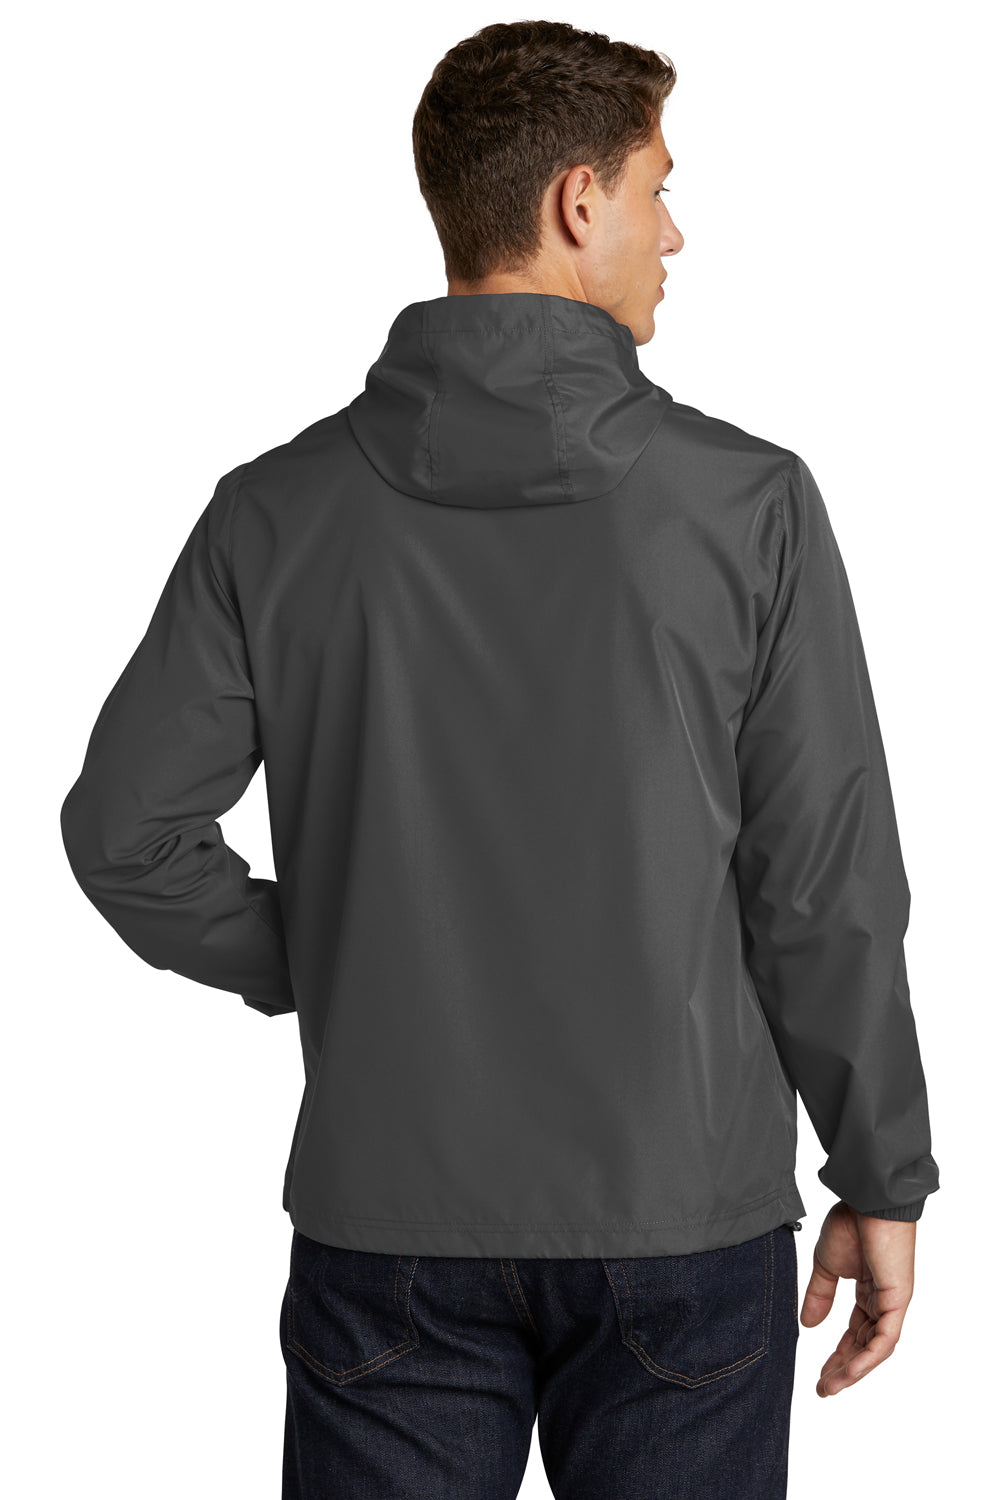 Sport-Tek Mens Packable Anorak Hooded Jacket Graphite Grey Side